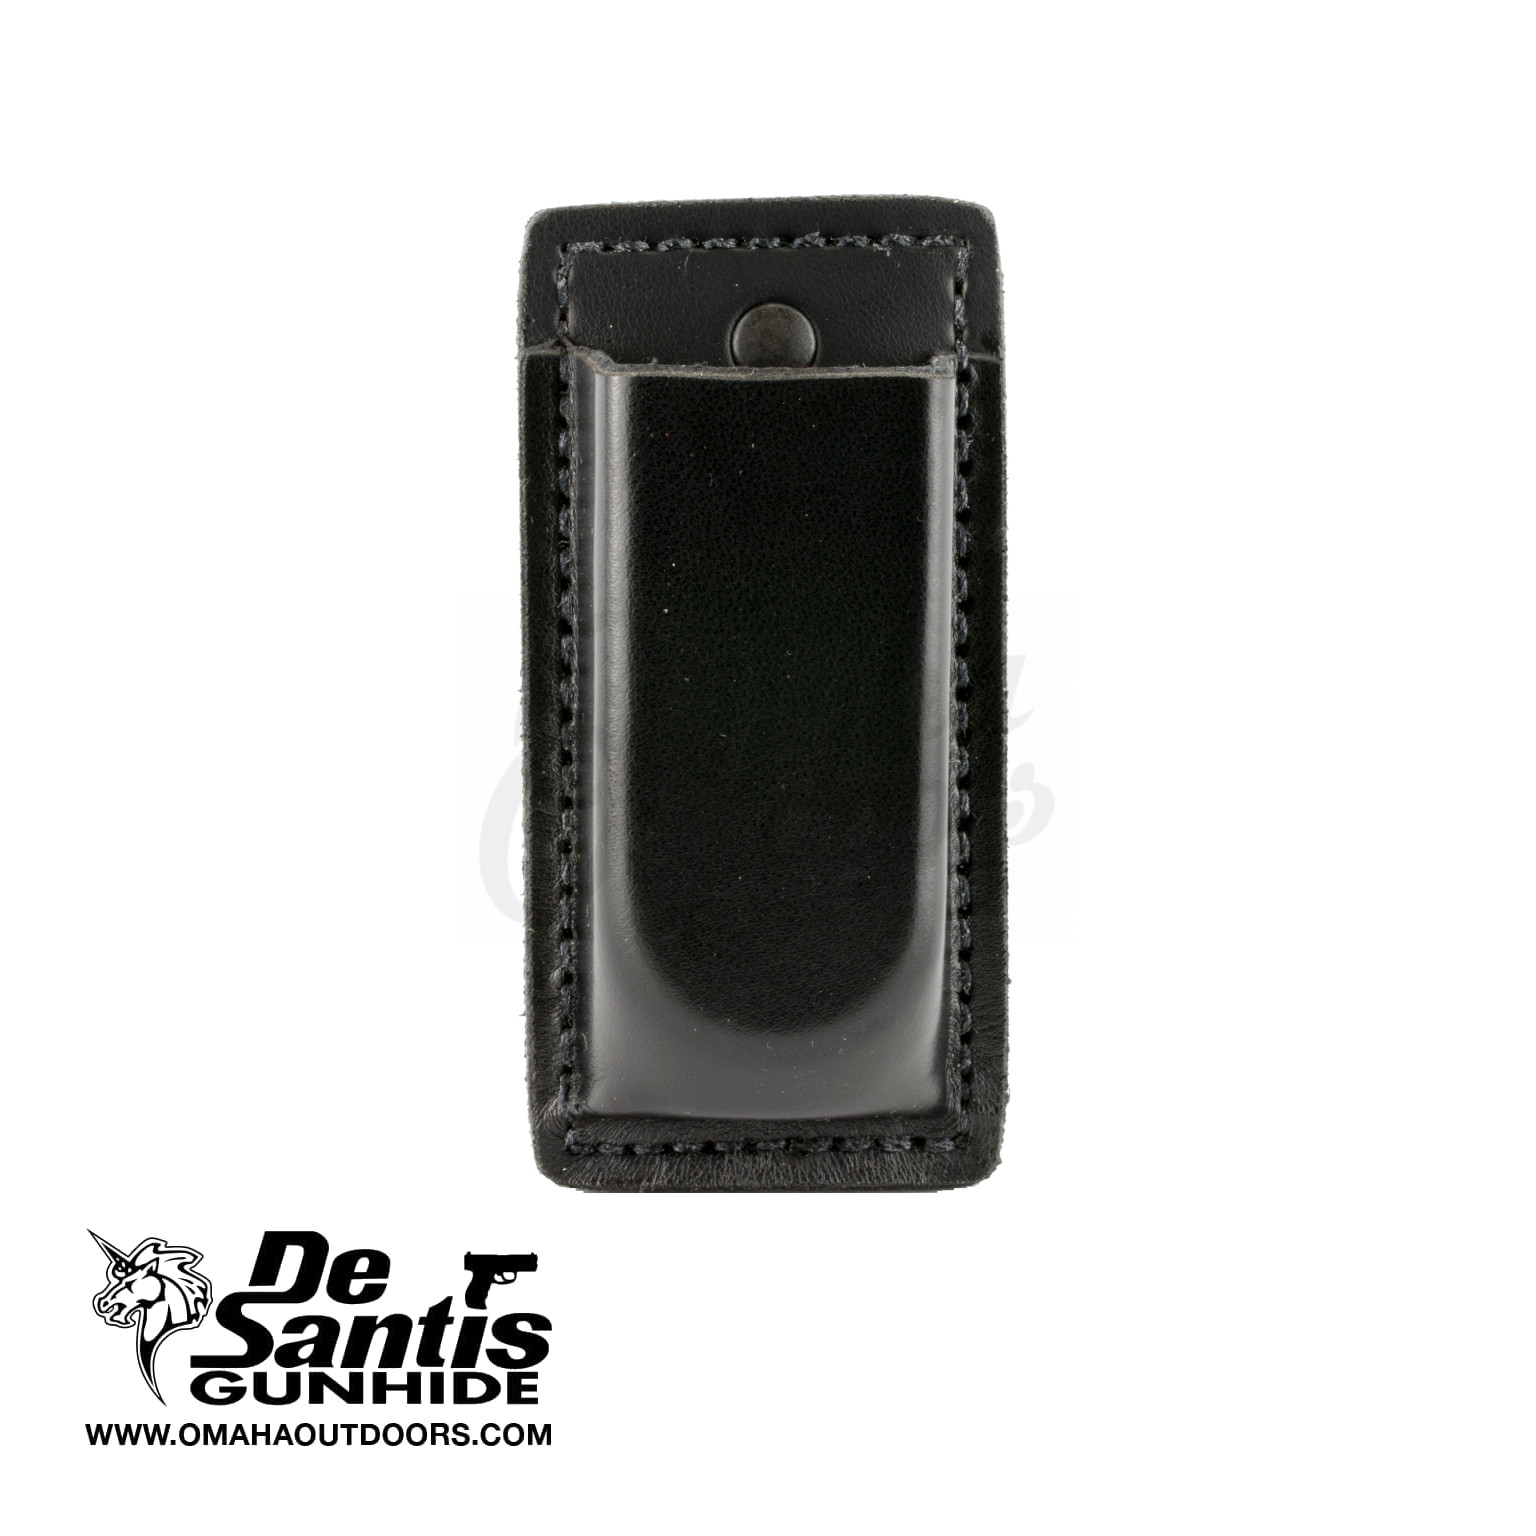 DeSantis Secure Single Magazine Pouch Black Leather RH for Glock 17 A47BJJJZ0 